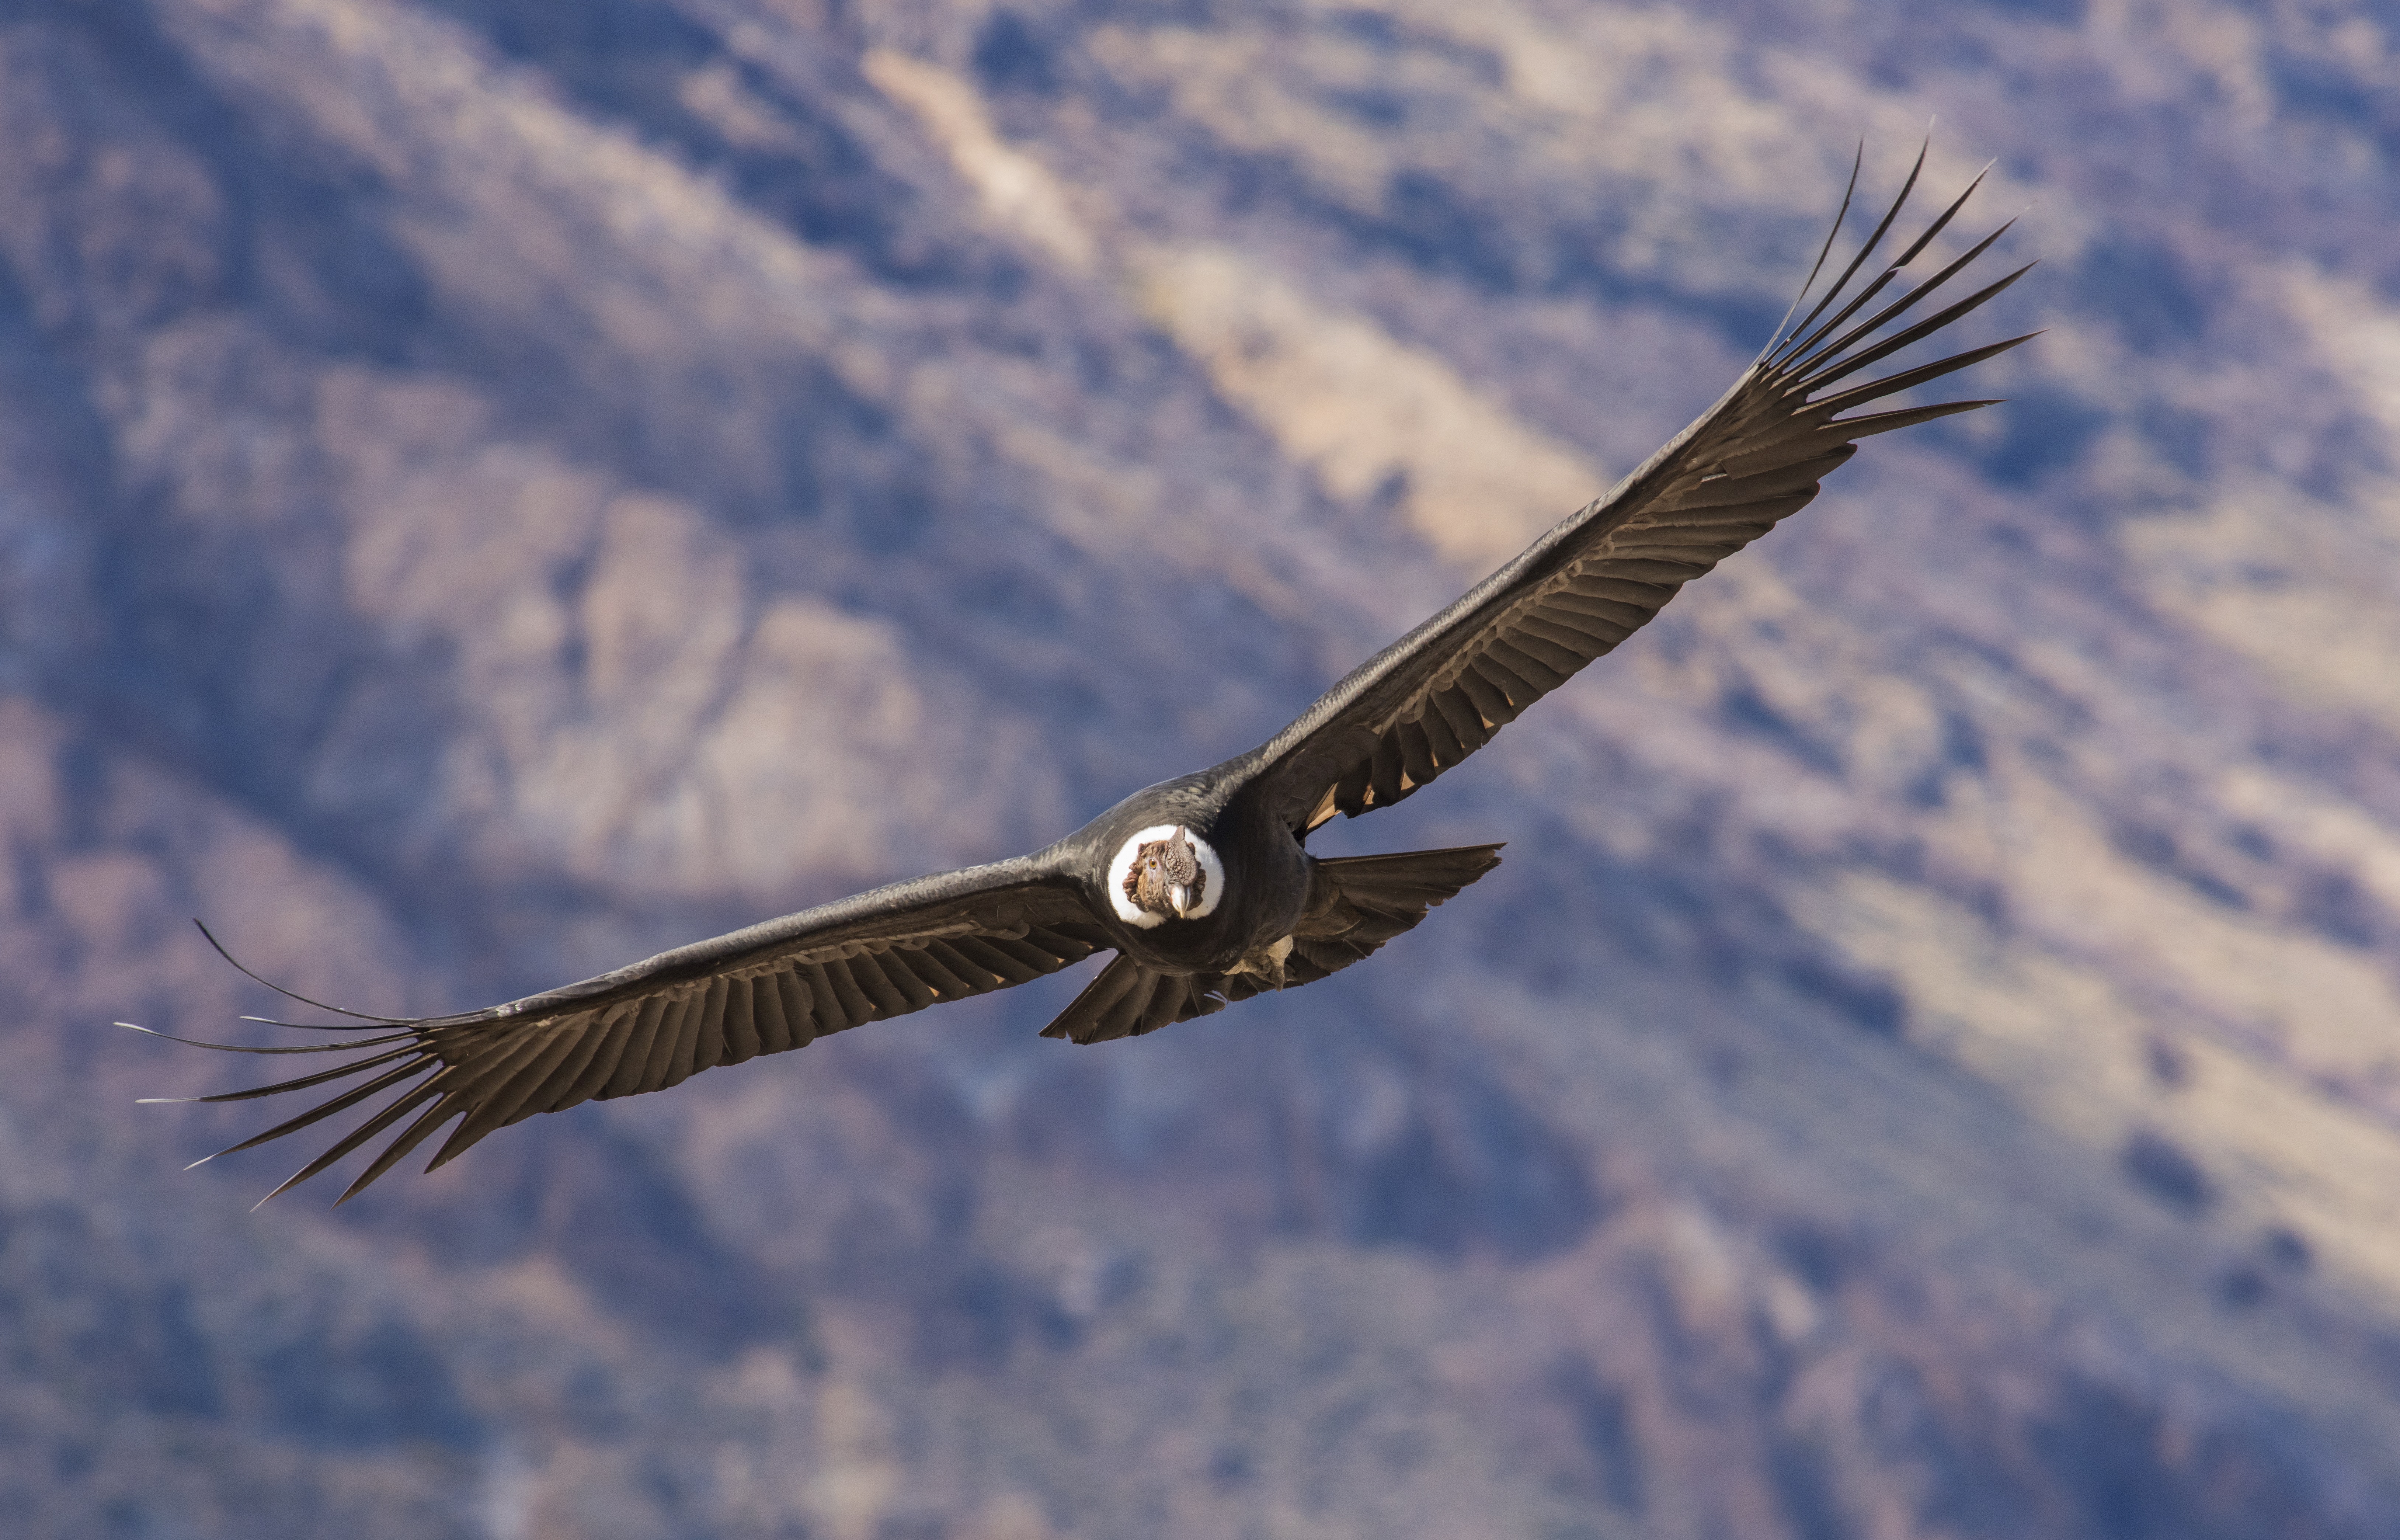 A kondorkeselyű akár 170 kilométeren át képes repülni egyetlen szárnycsapás nélkül